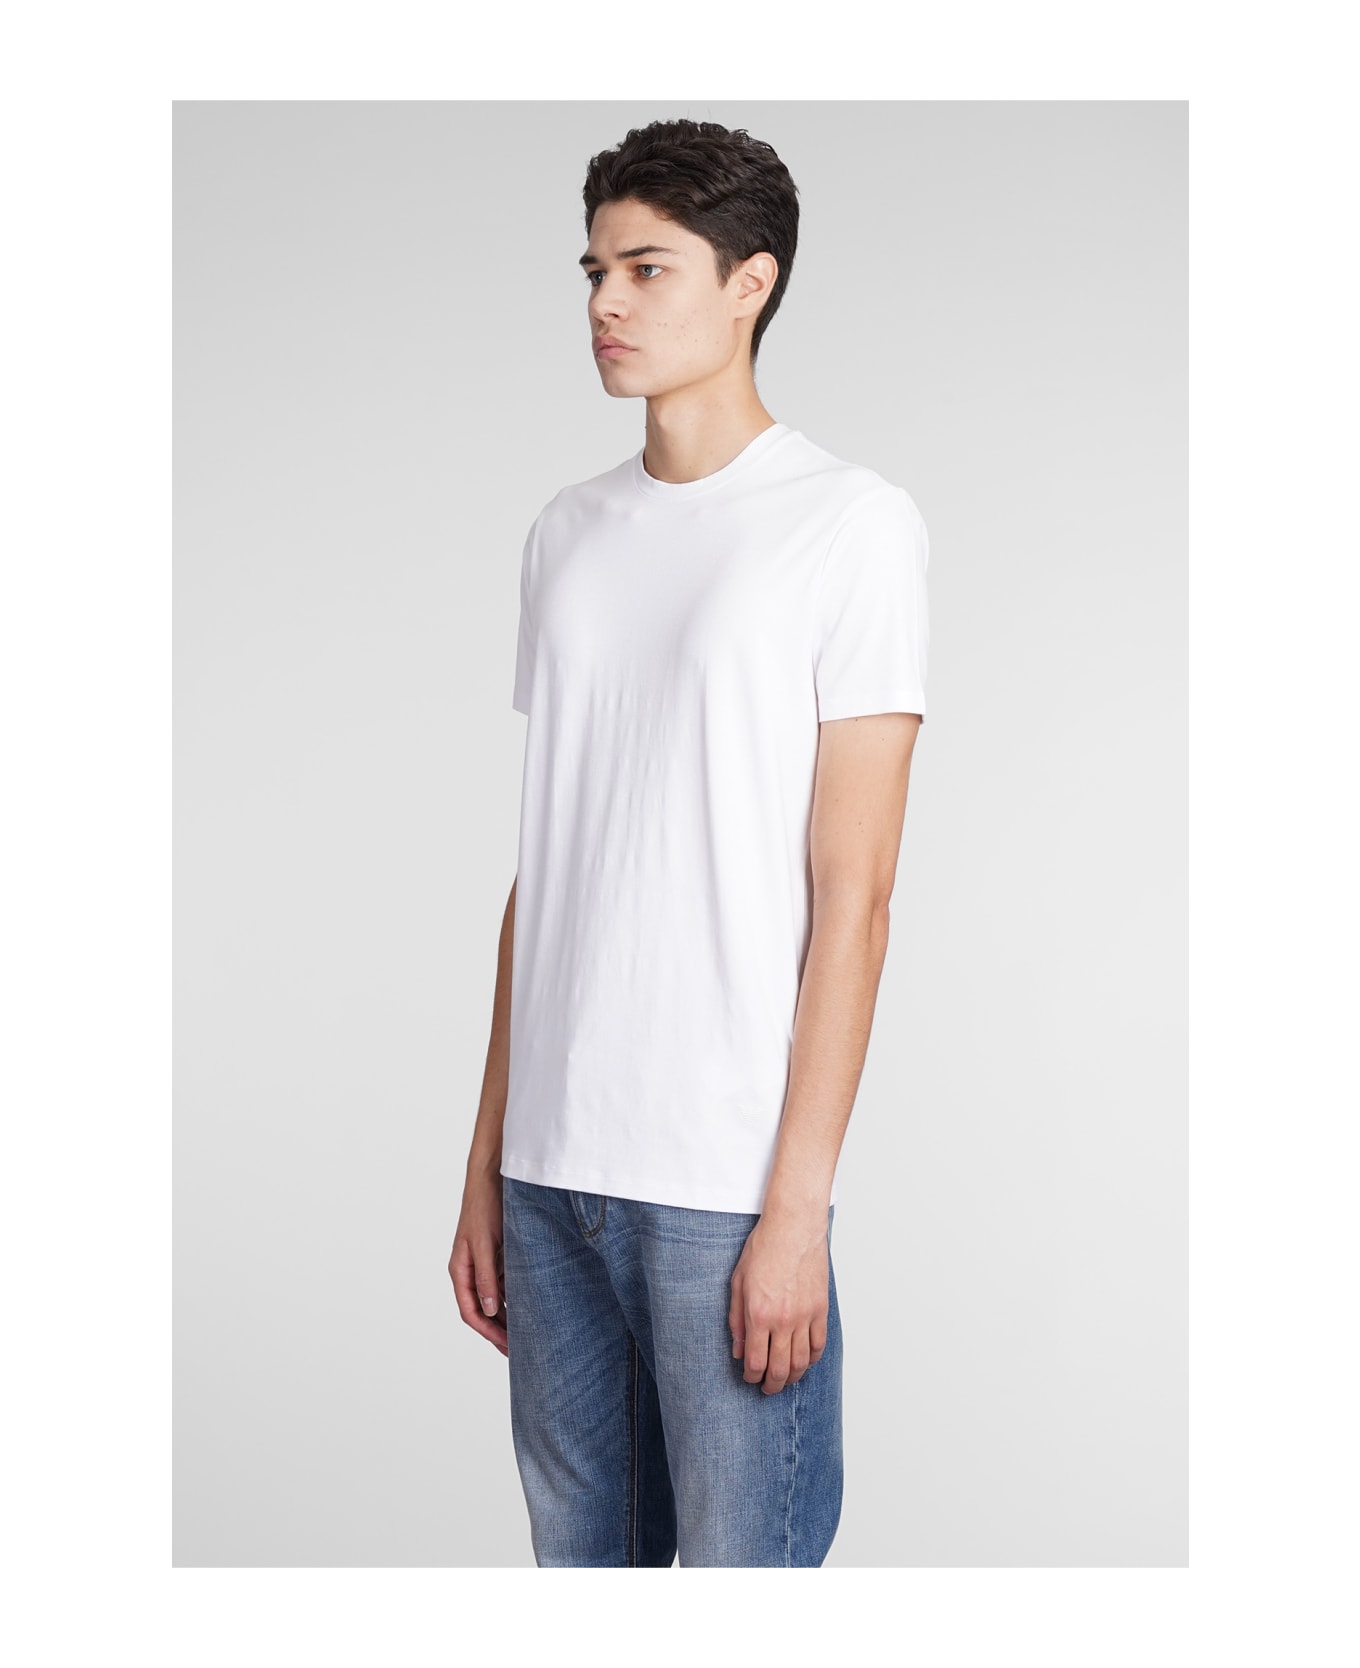 Emporio Armani T-shirt In White Viscose - white シャツ